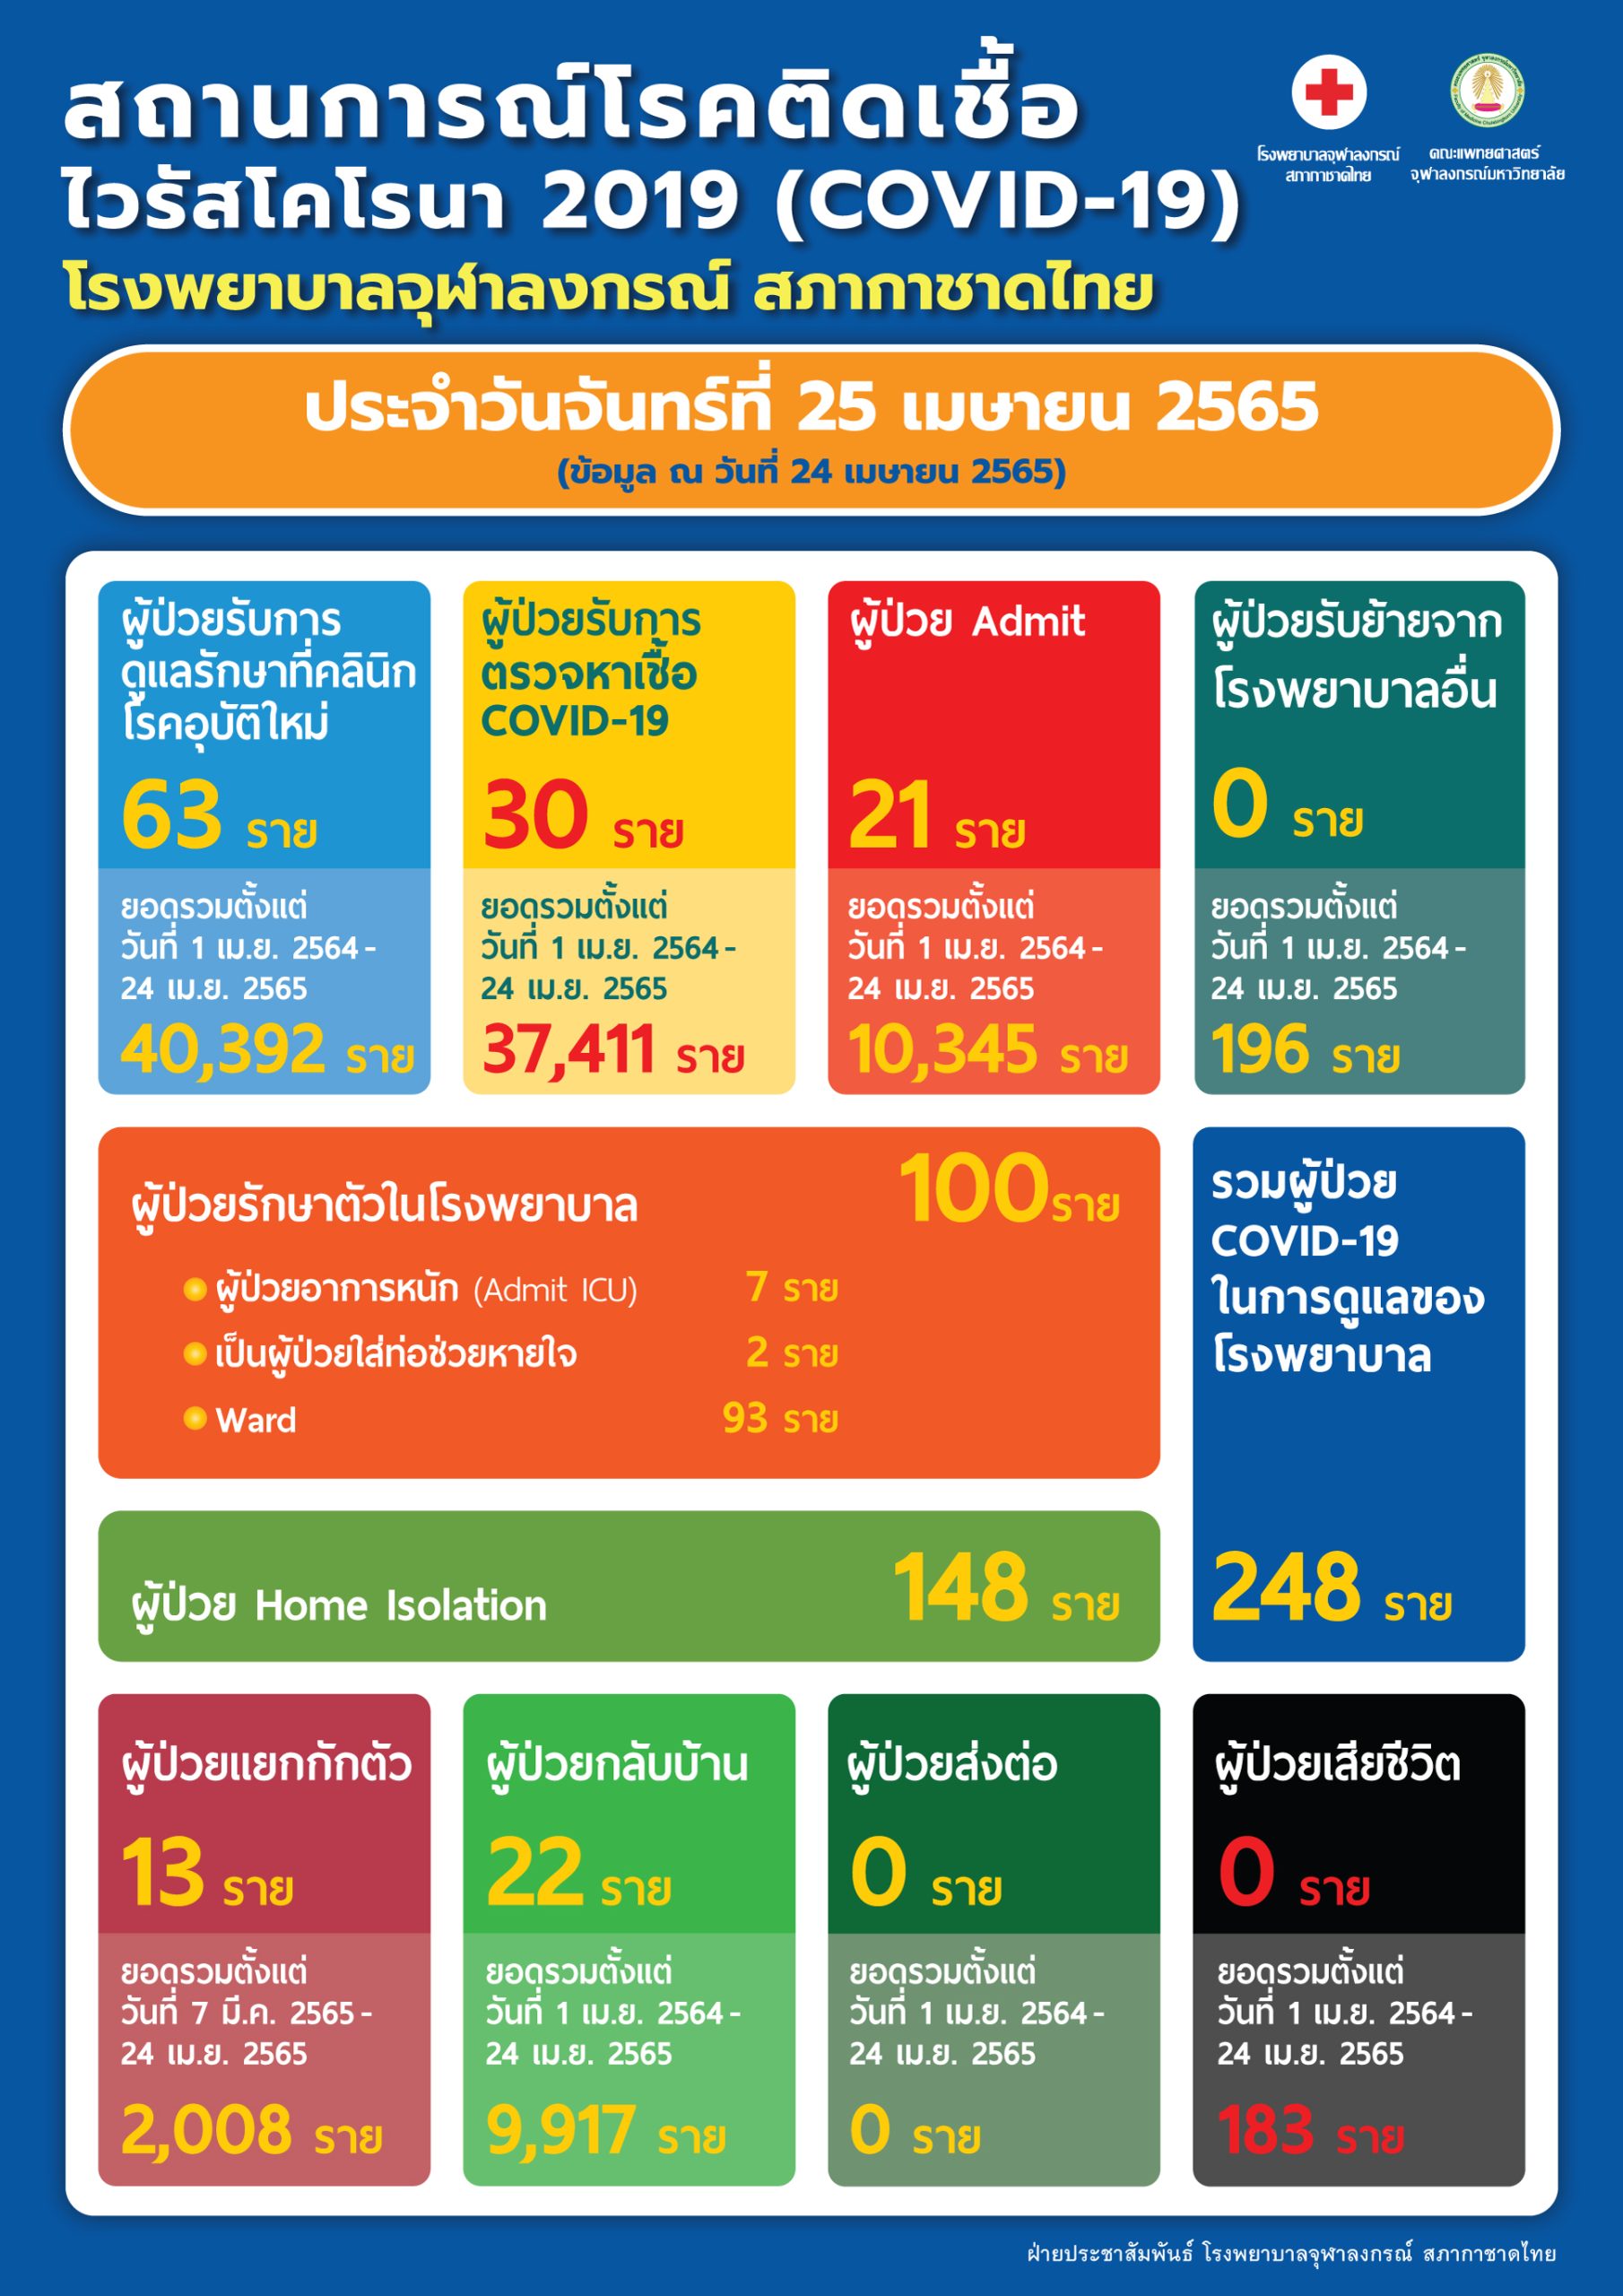 สถานการณ์โรคติดเชื้อ ไวรัสโคโรนา 2019 (COVID-19) โรงพยาบาลจุฬาลงกรณ์ สภากาชาดไทย ประจำวันจันทร์ที่ 25 เมษายน 2565